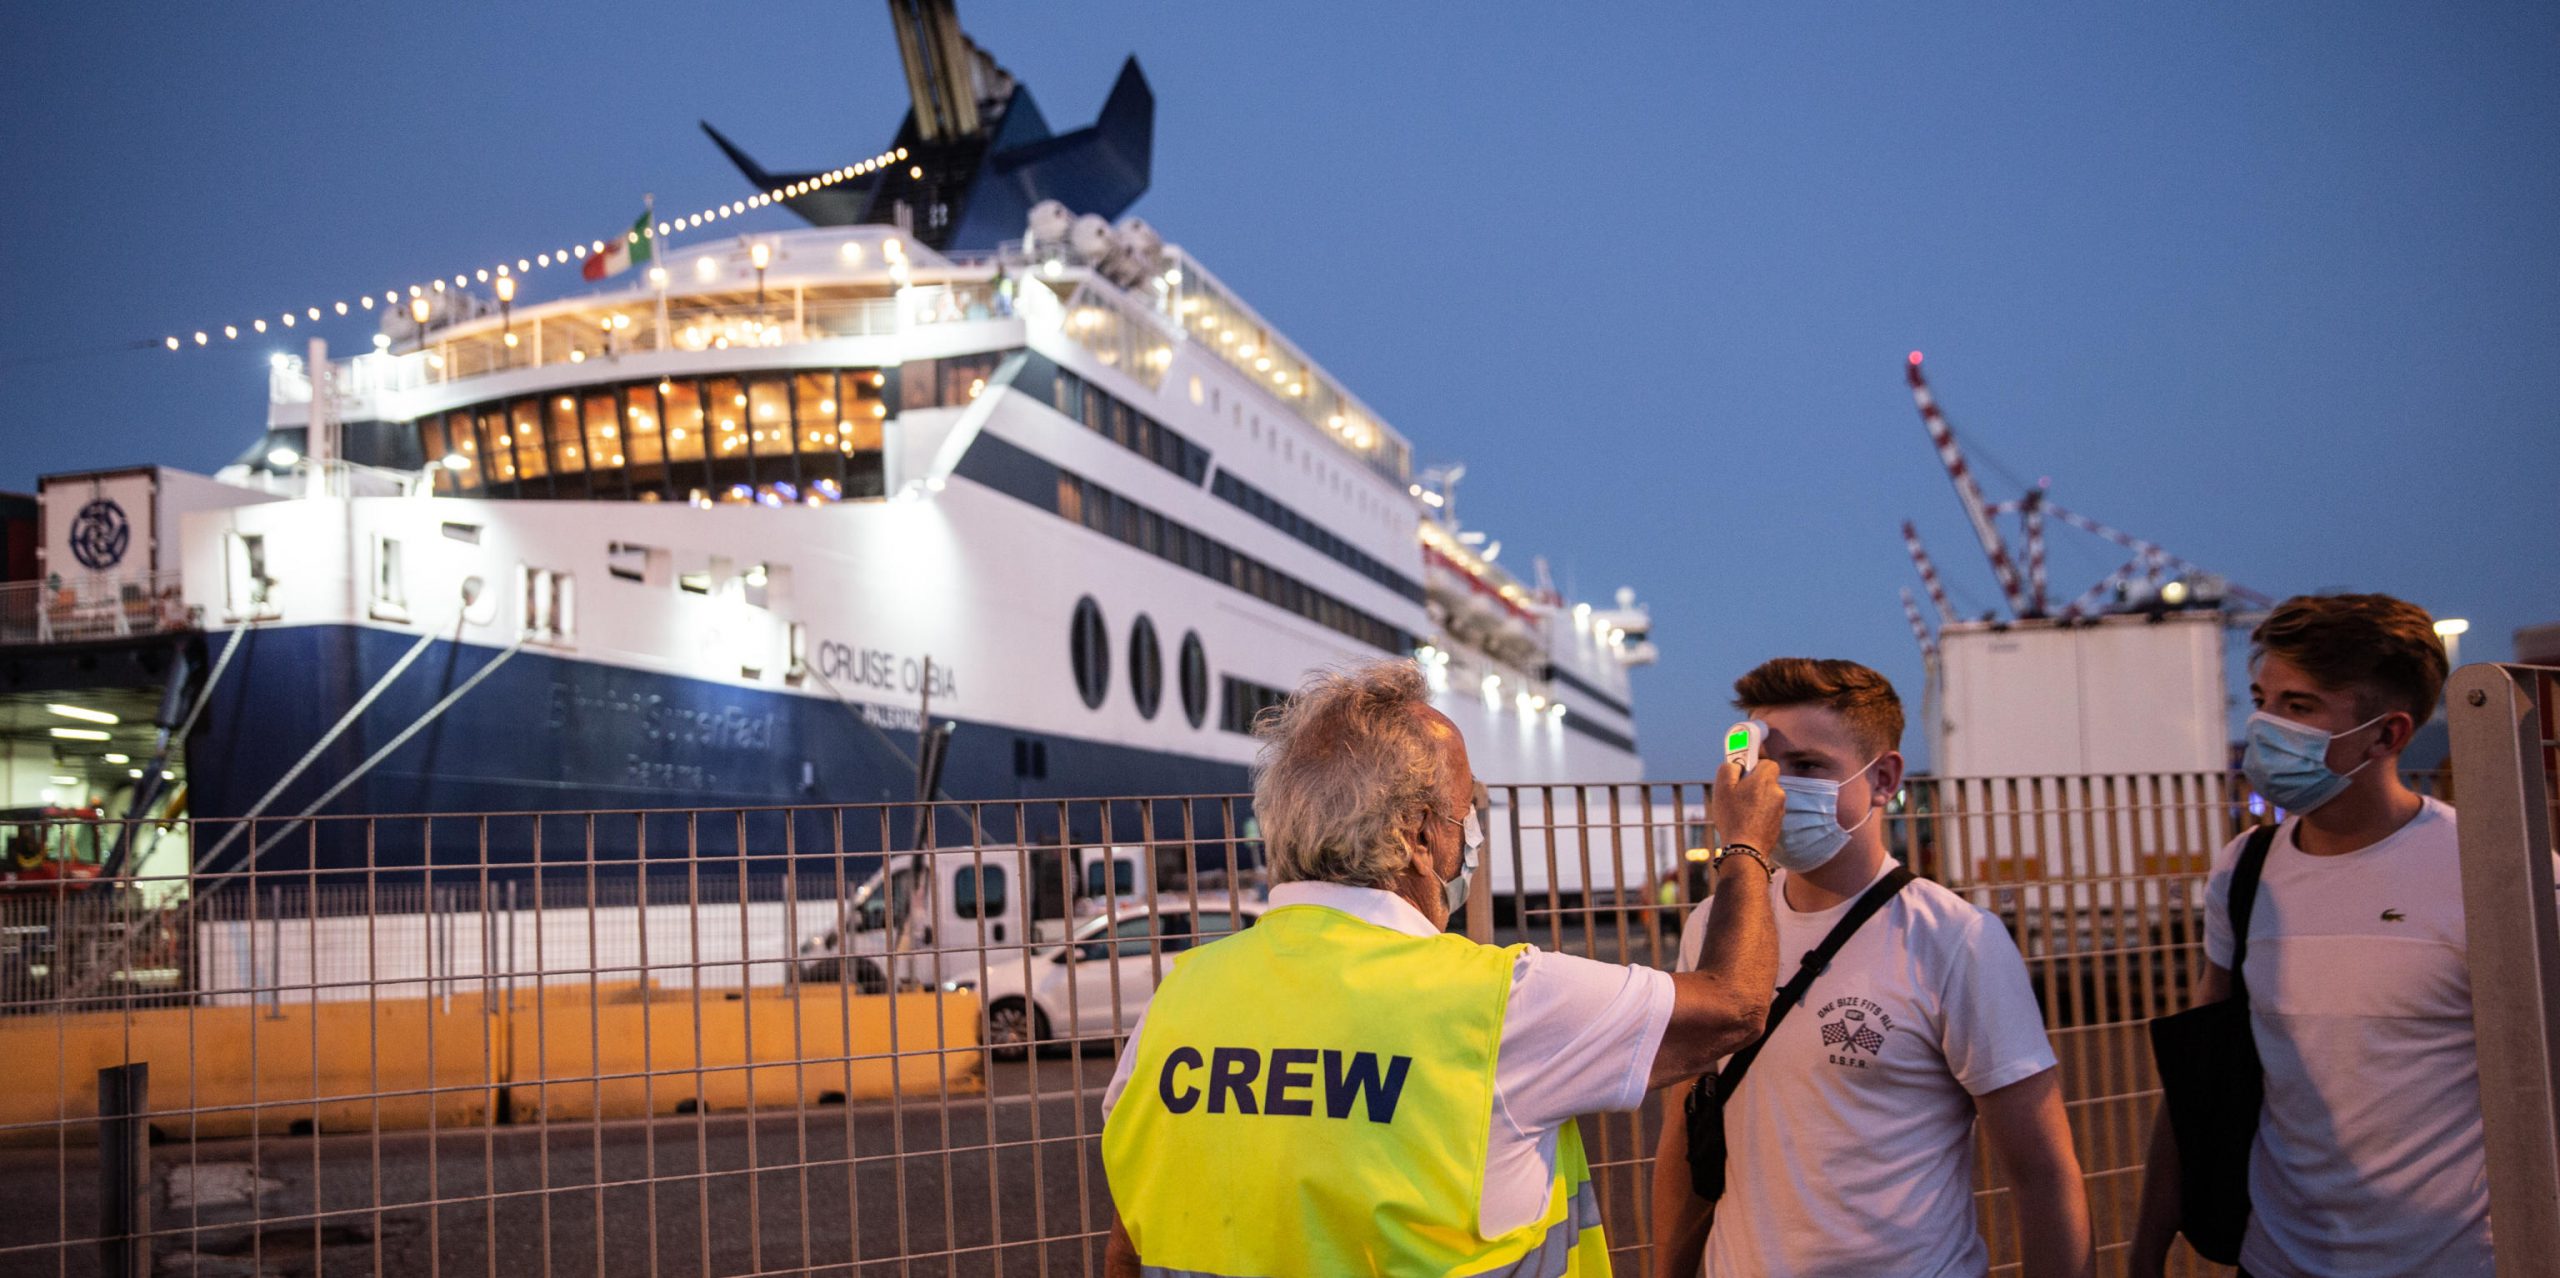 
Controlli della temperatura corporea da parte del personale di terra di un traghetto Grimaldi Lines per Olbia, in Sardegna, con partenza da Livorno, il 1° luglio 2020 (ANSA/MAX CAVALLARI)